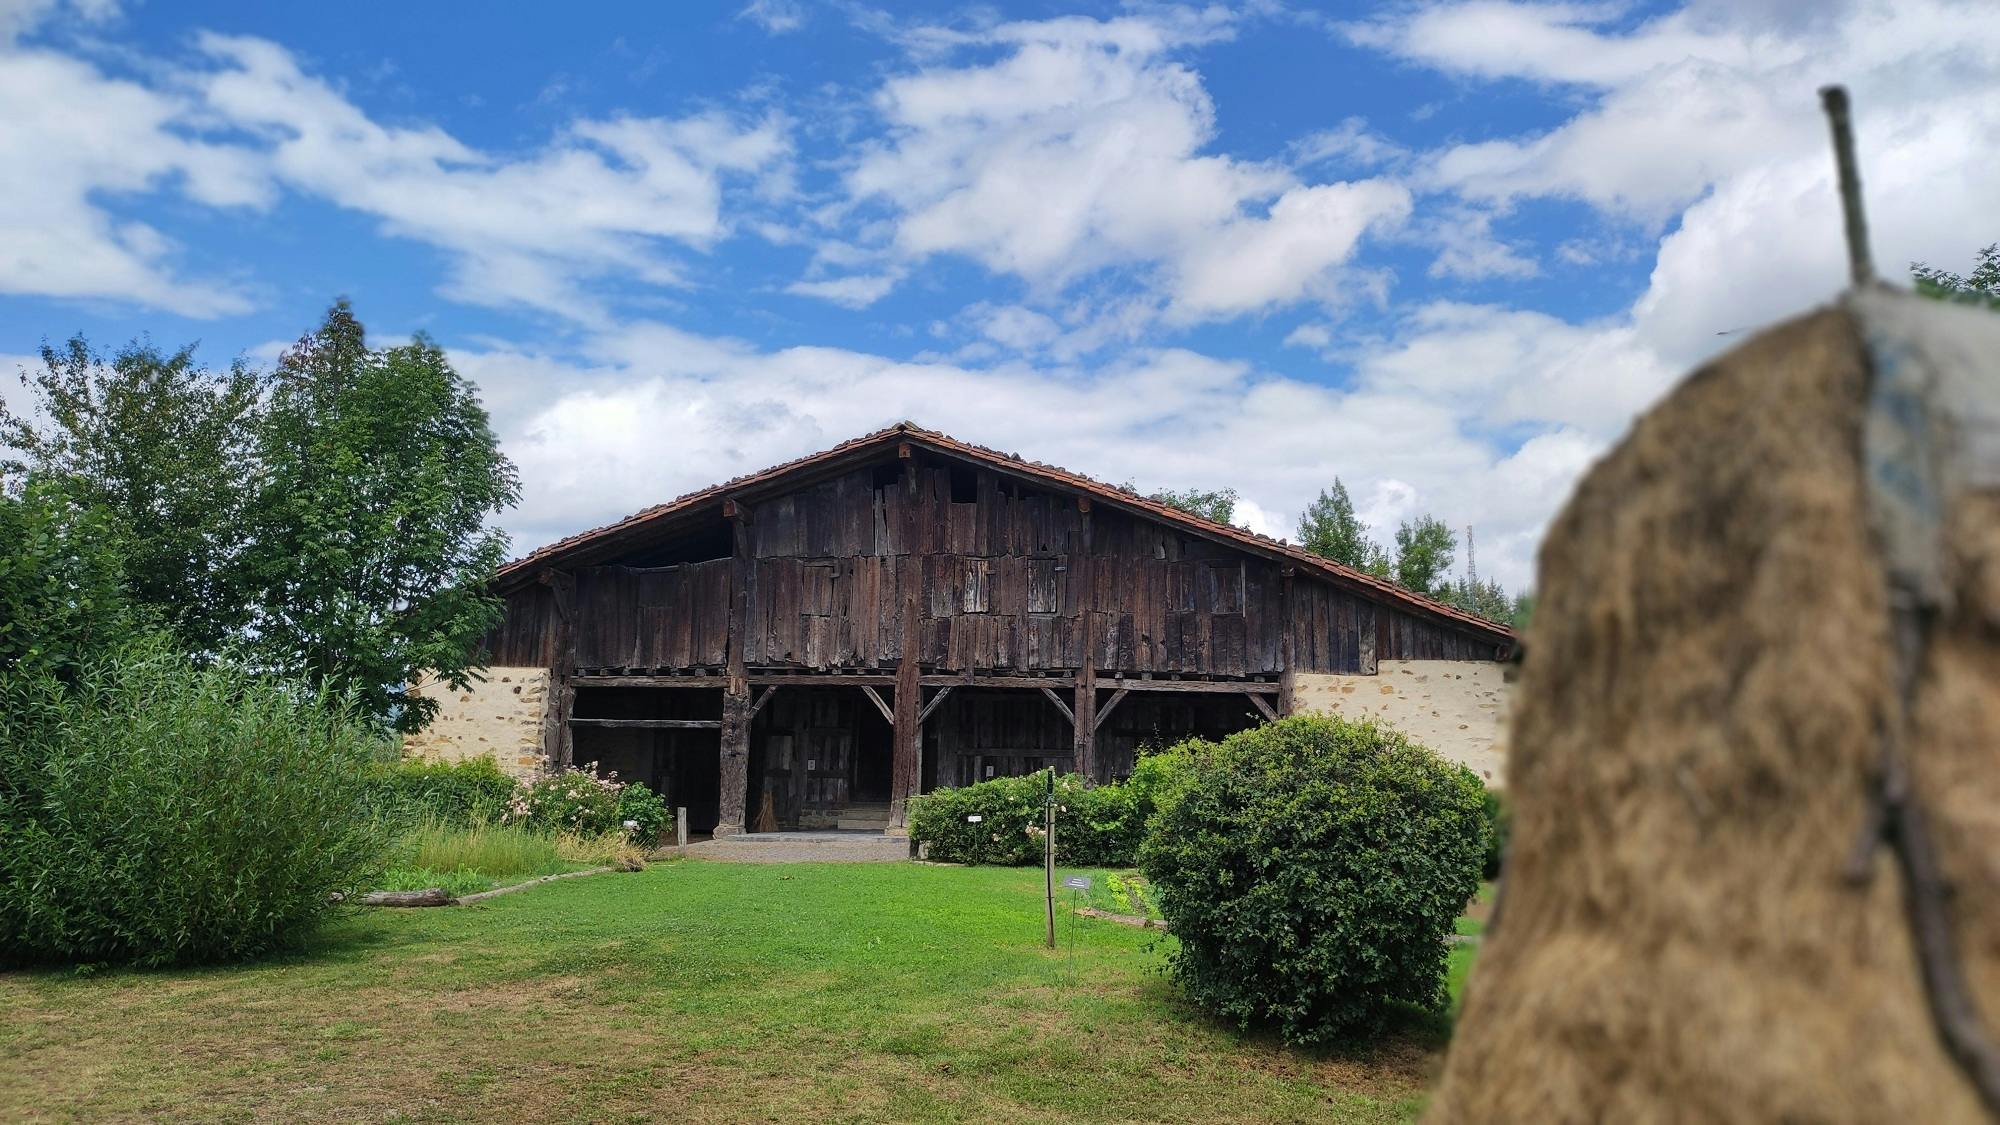 Dagexcursie vanuit Bilbao om de Baskische plattelandscultuur te ontdekken